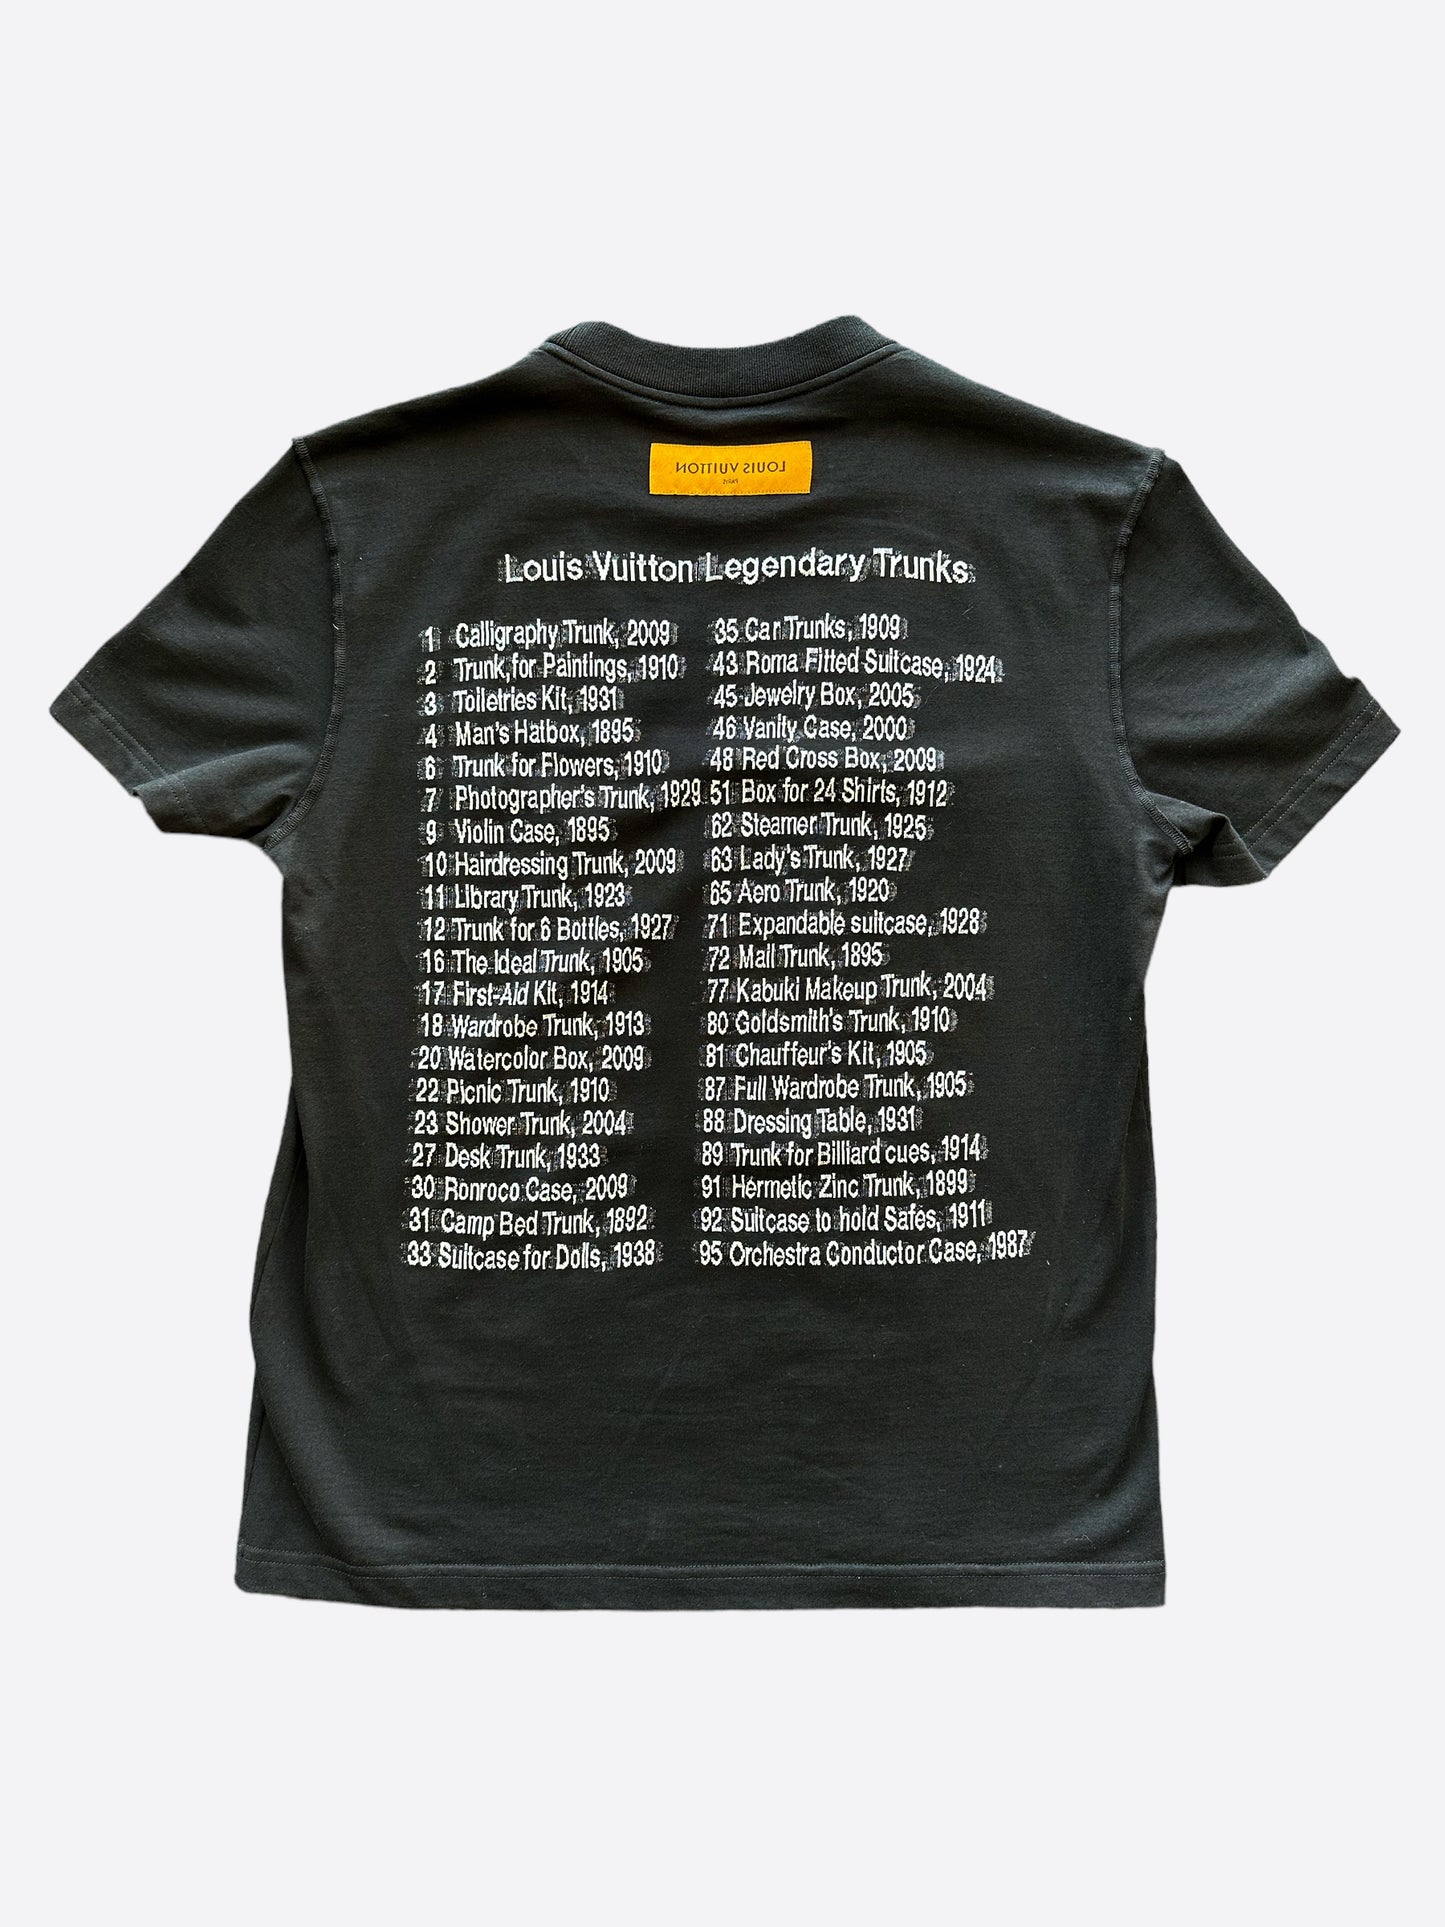 Louis Vuitton Legendary Trunks T-Shirt